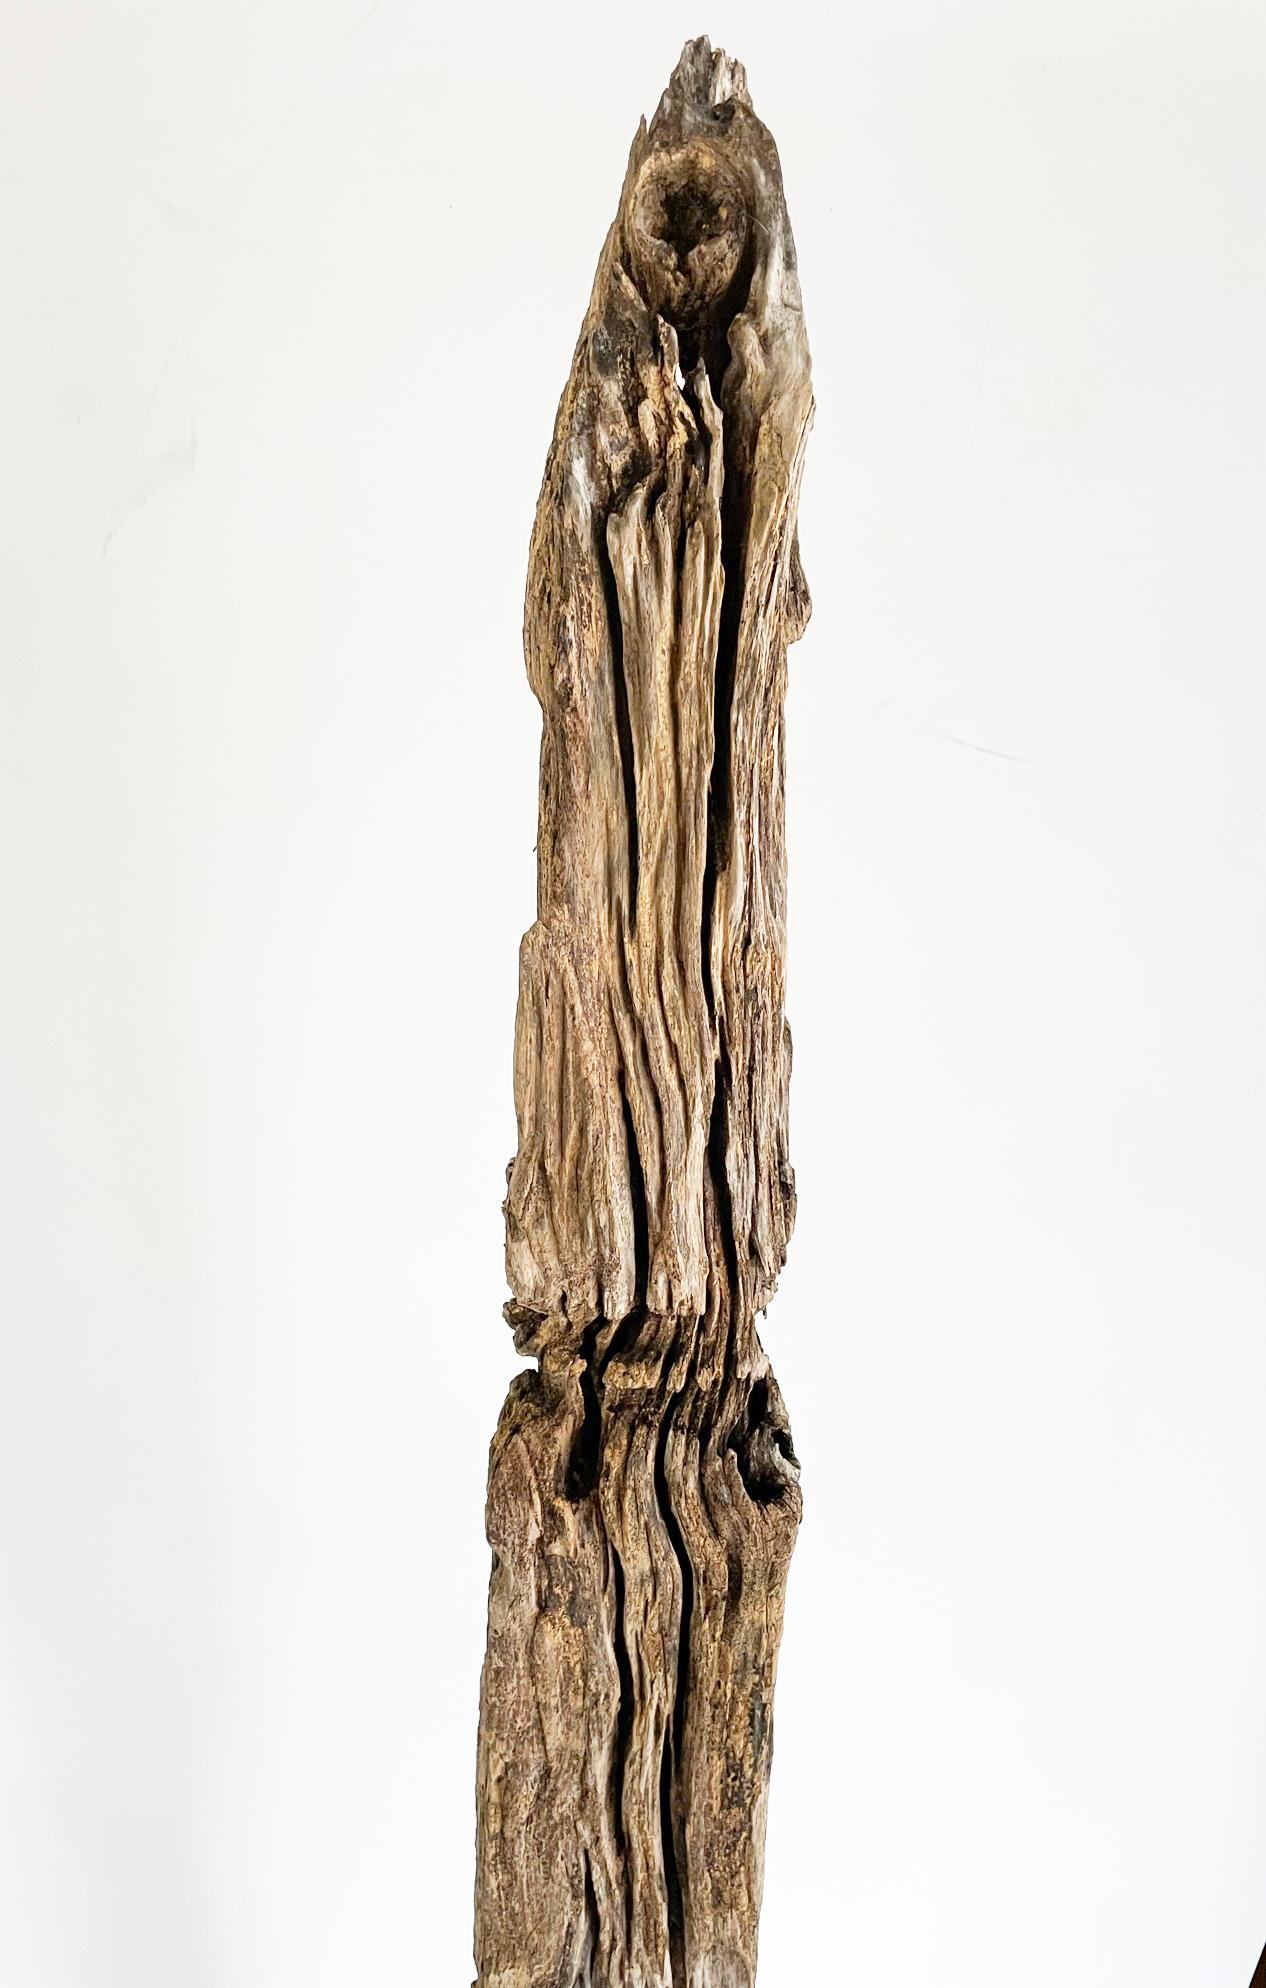 Eine seltene thailändische Holzschnitzerei aus dem 19. Jahrhundert, die aus dem Kernholz des Teakbaums hergestellt wurde. Diese Stupa stammt aus der Isan-Region in Thailand (Nordthailand, Westlaos). Diese fein gearbeitete Stupa (ein kleines Modell